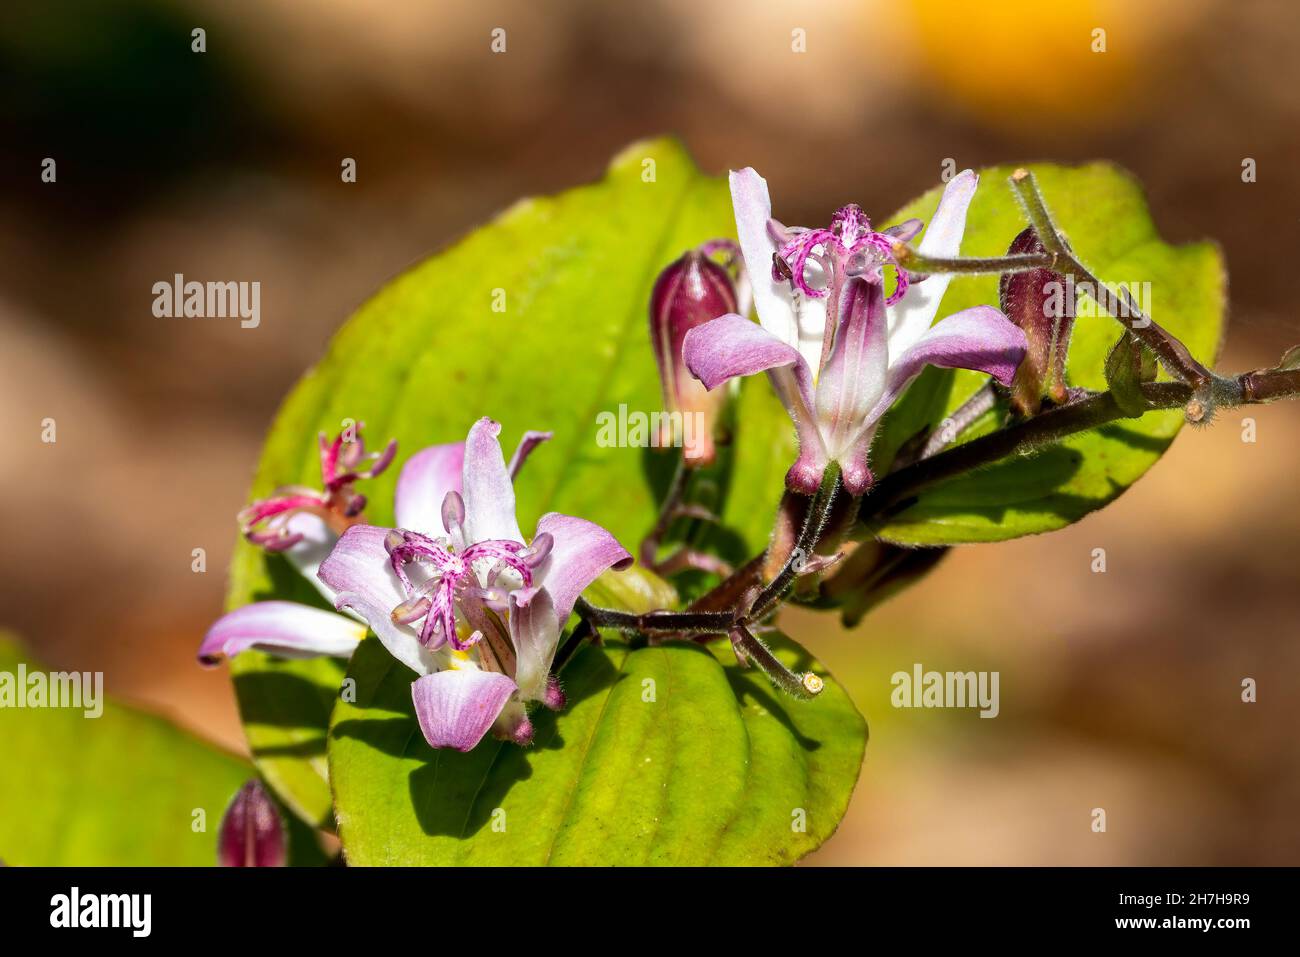 Tricyrtis hirta 'Tojen' plante florale d'automne d'été avec une fleur d'été mauve lilas communément connue sous le nom de lis de Toad ou de lis d'orchidées japonais Banque D'Images